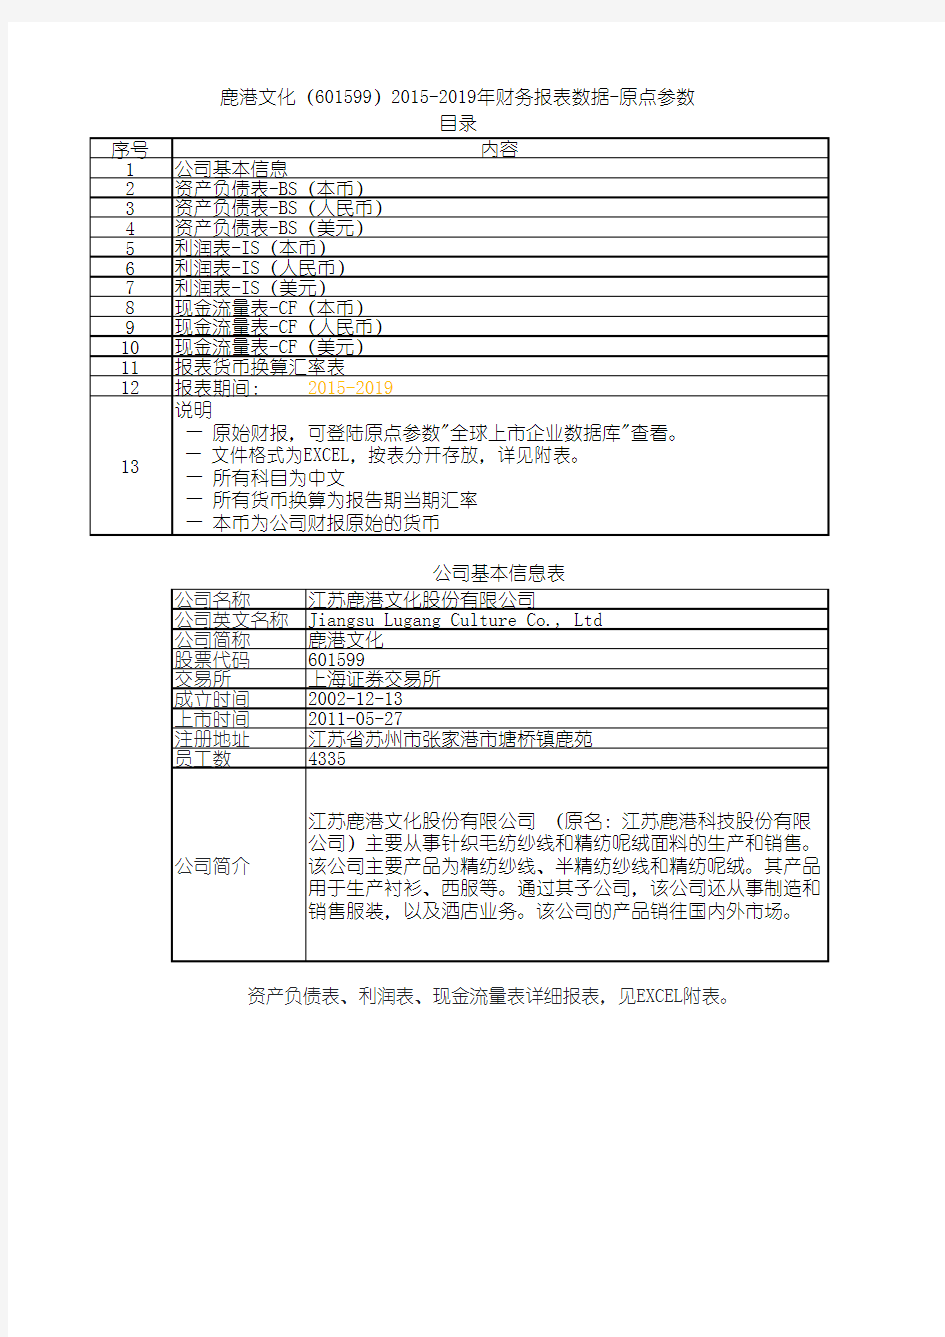 鹿港文化(601599)2015-2019年财务报表数据-原点参数